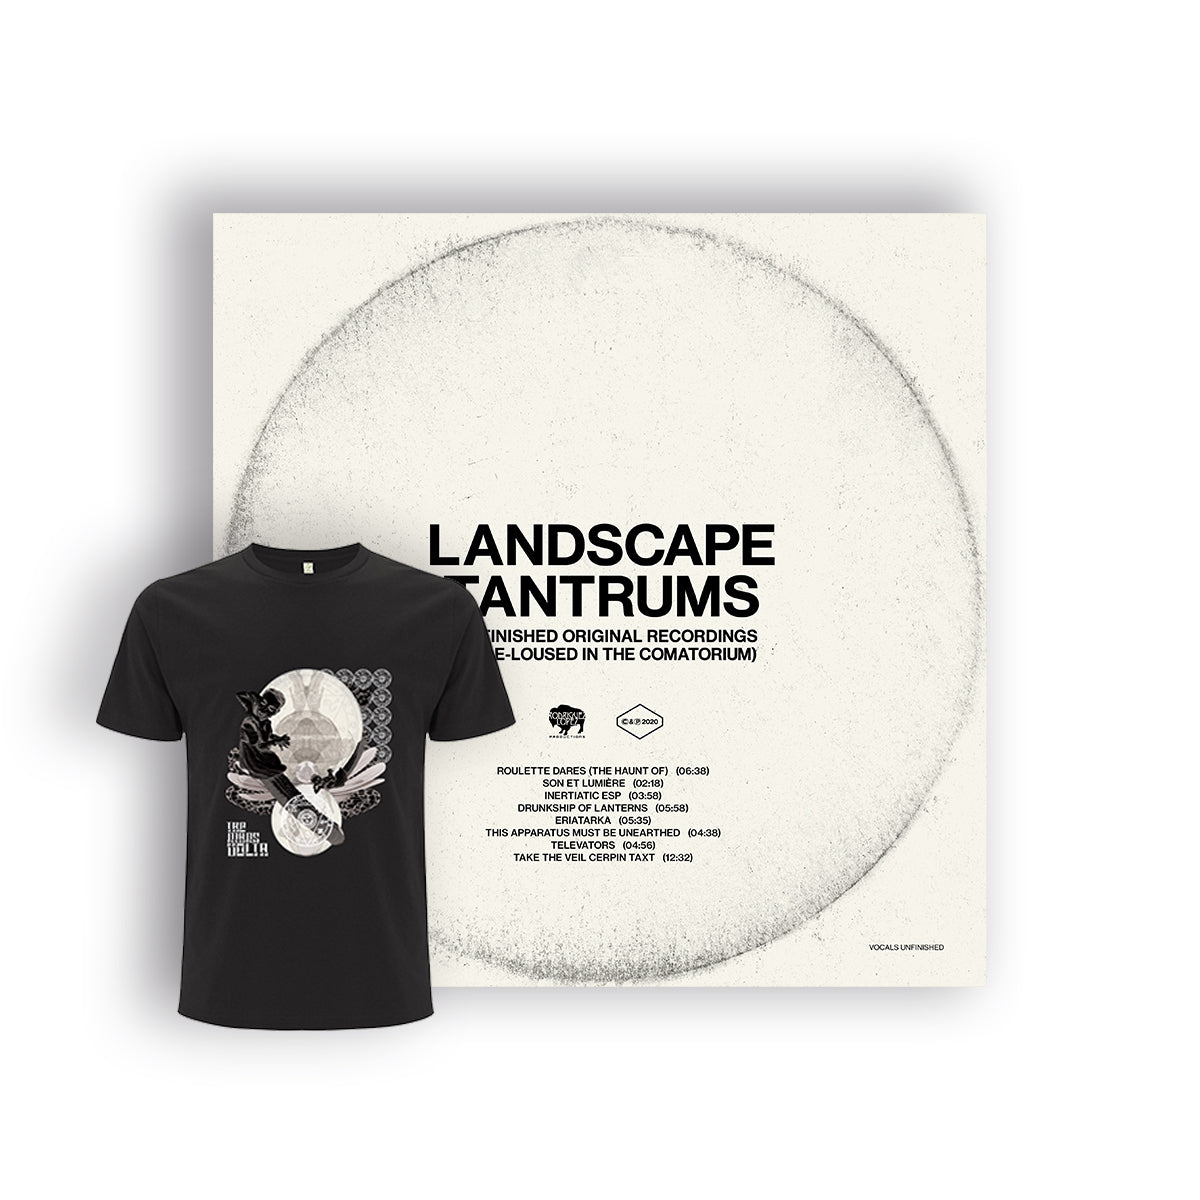 The Mars Volta - Landscape Tantrums - LP + T-Shirt